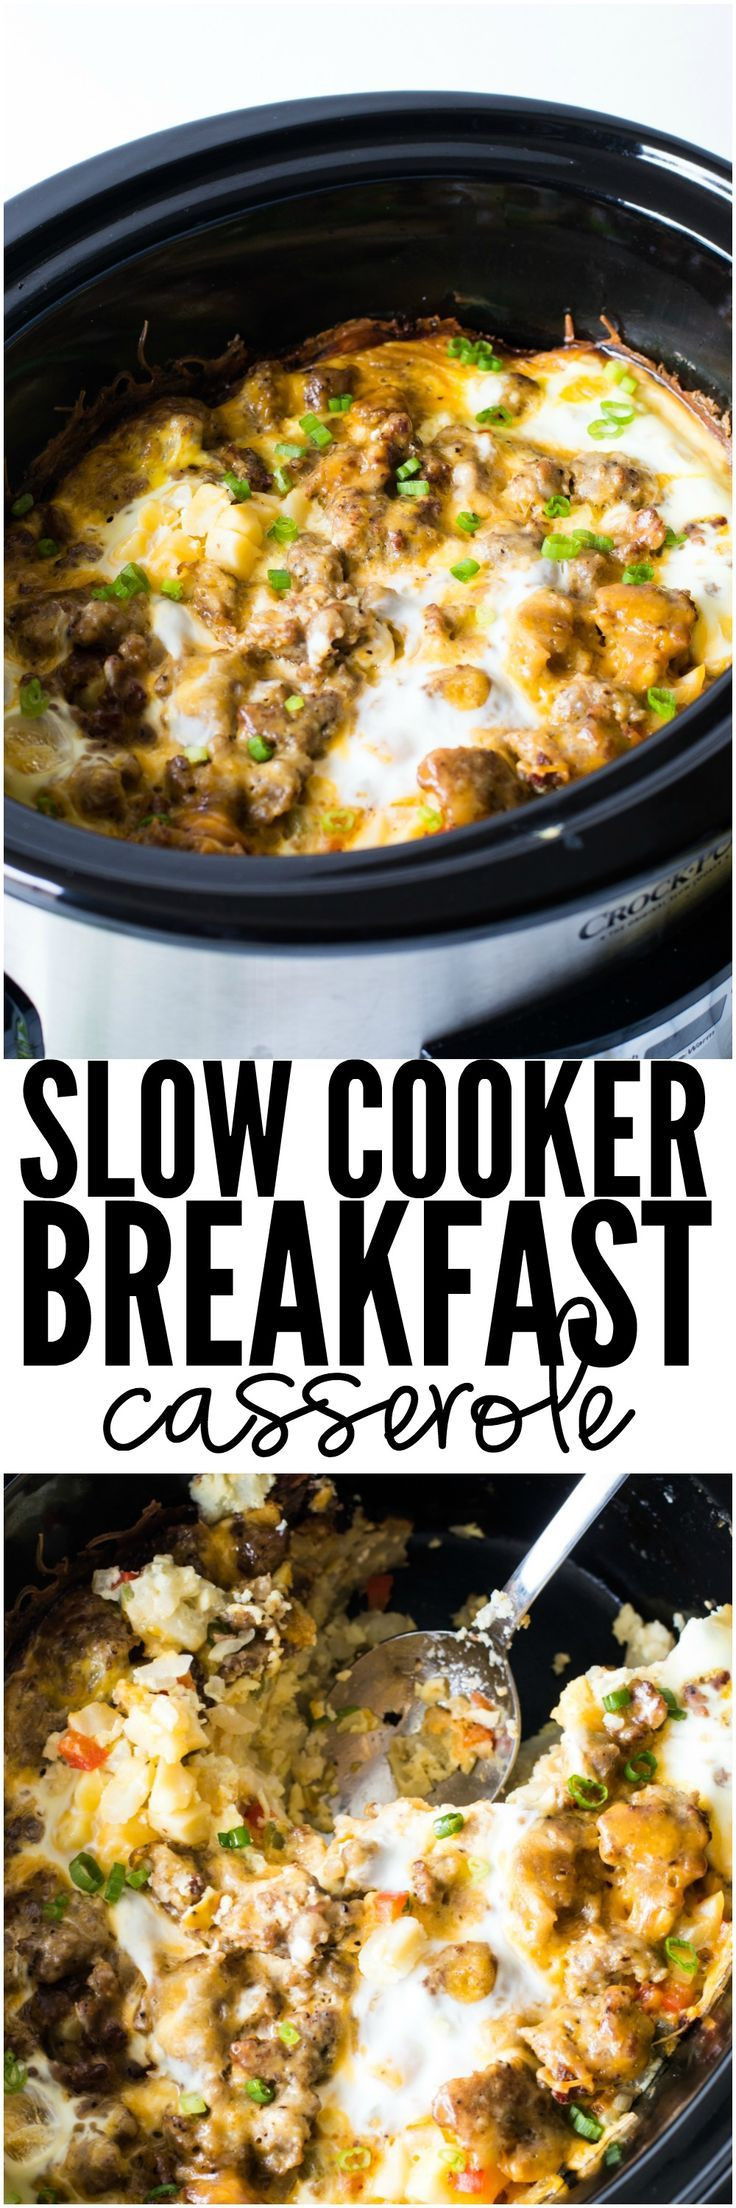 Crockpot Breakfast Casserole With Bread
 Best 25 Jimmy johns ideas on Pinterest